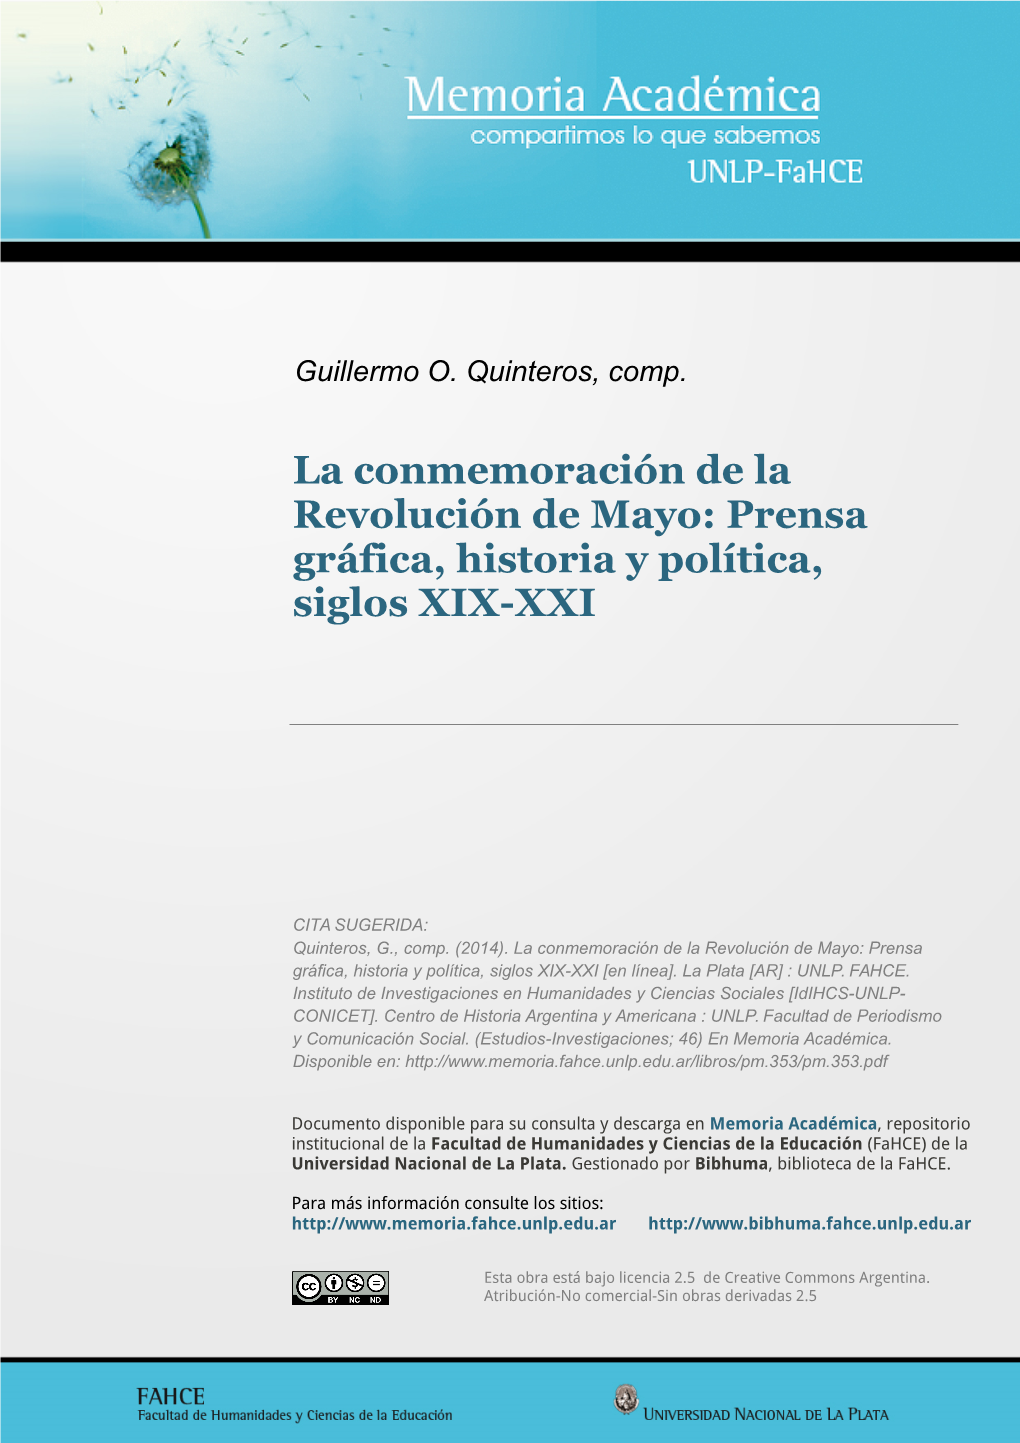 La Conmemoración De La Revolución De Mayo: Prensa Gráfica, Historia Y Política, Siglos XIX-XXI